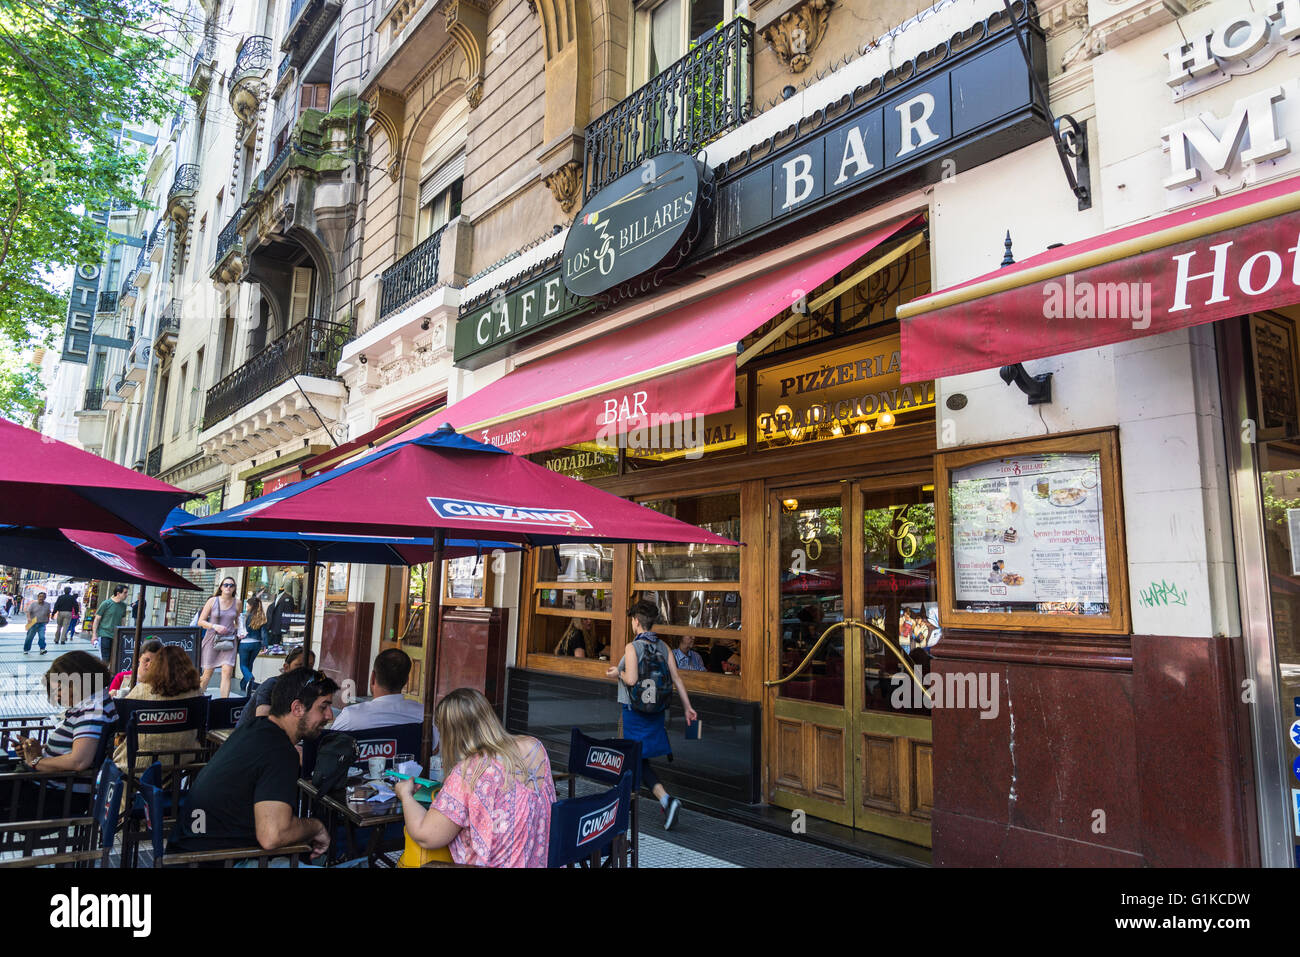 Los 36 Billares cafe bar, Avenida de Mayo, Buenos Aires, Argentina Stock Photo